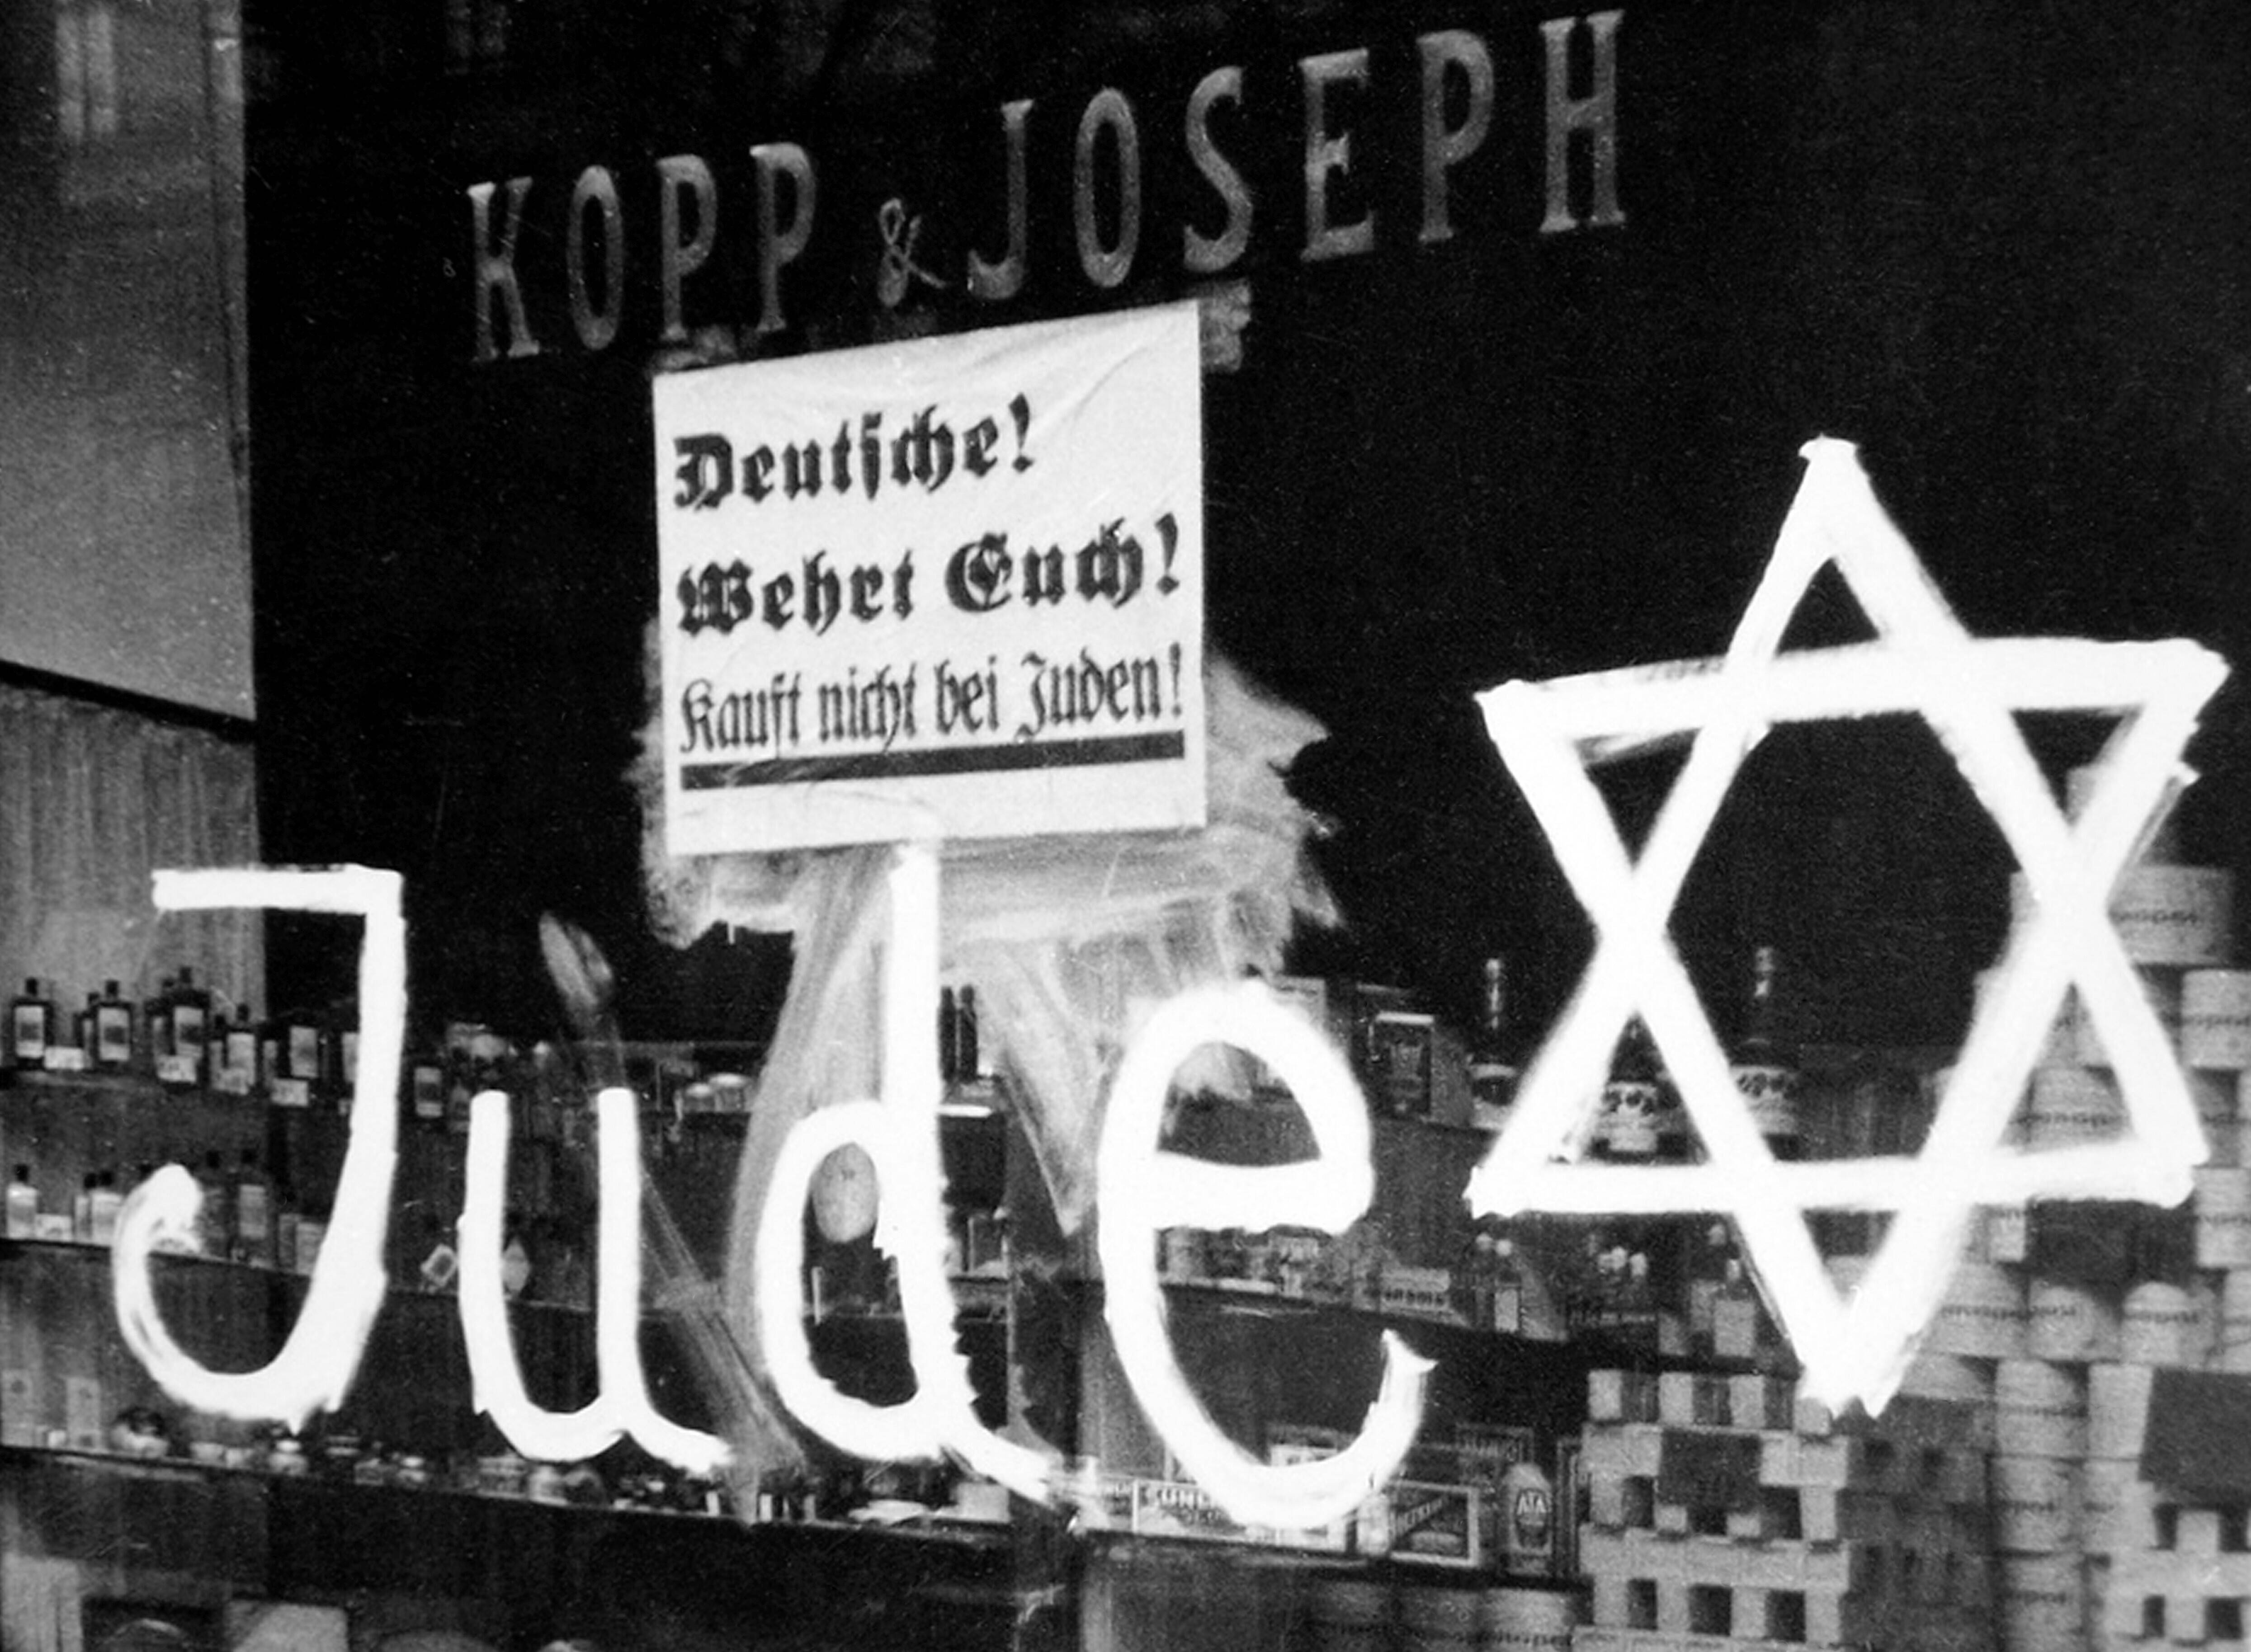 In der Nacht vom 9. auf den 10. November 1938 wurden tausende jüdische Geschäfte zerstört und geplündert. 85 Jahre später hat der Antisemitismus noch immer einen festen Platz in der deutschen Gesellschaft.